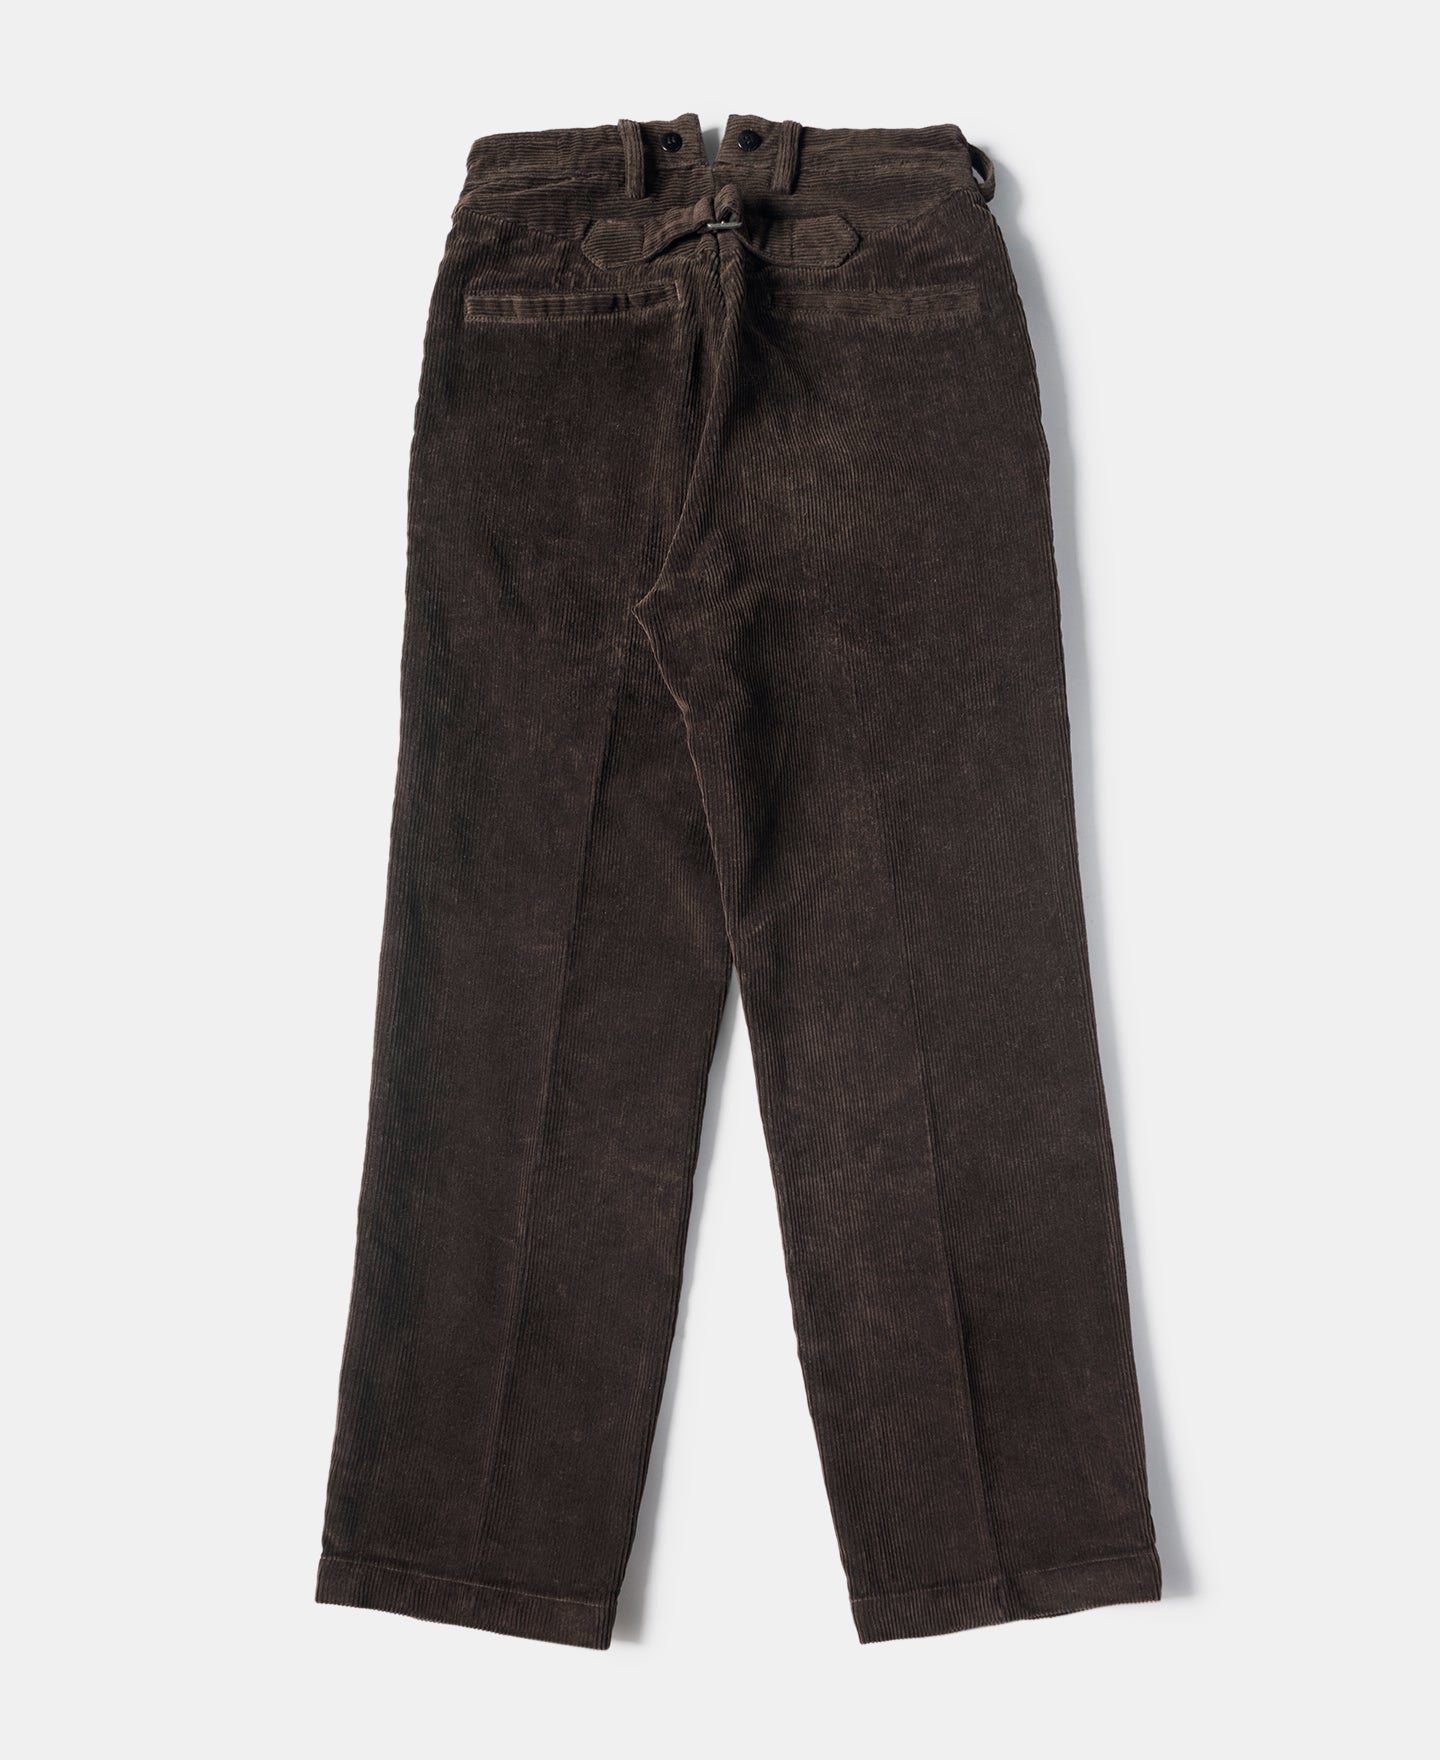 アンティーク1920s French vintage corduroy work pants - ワーク